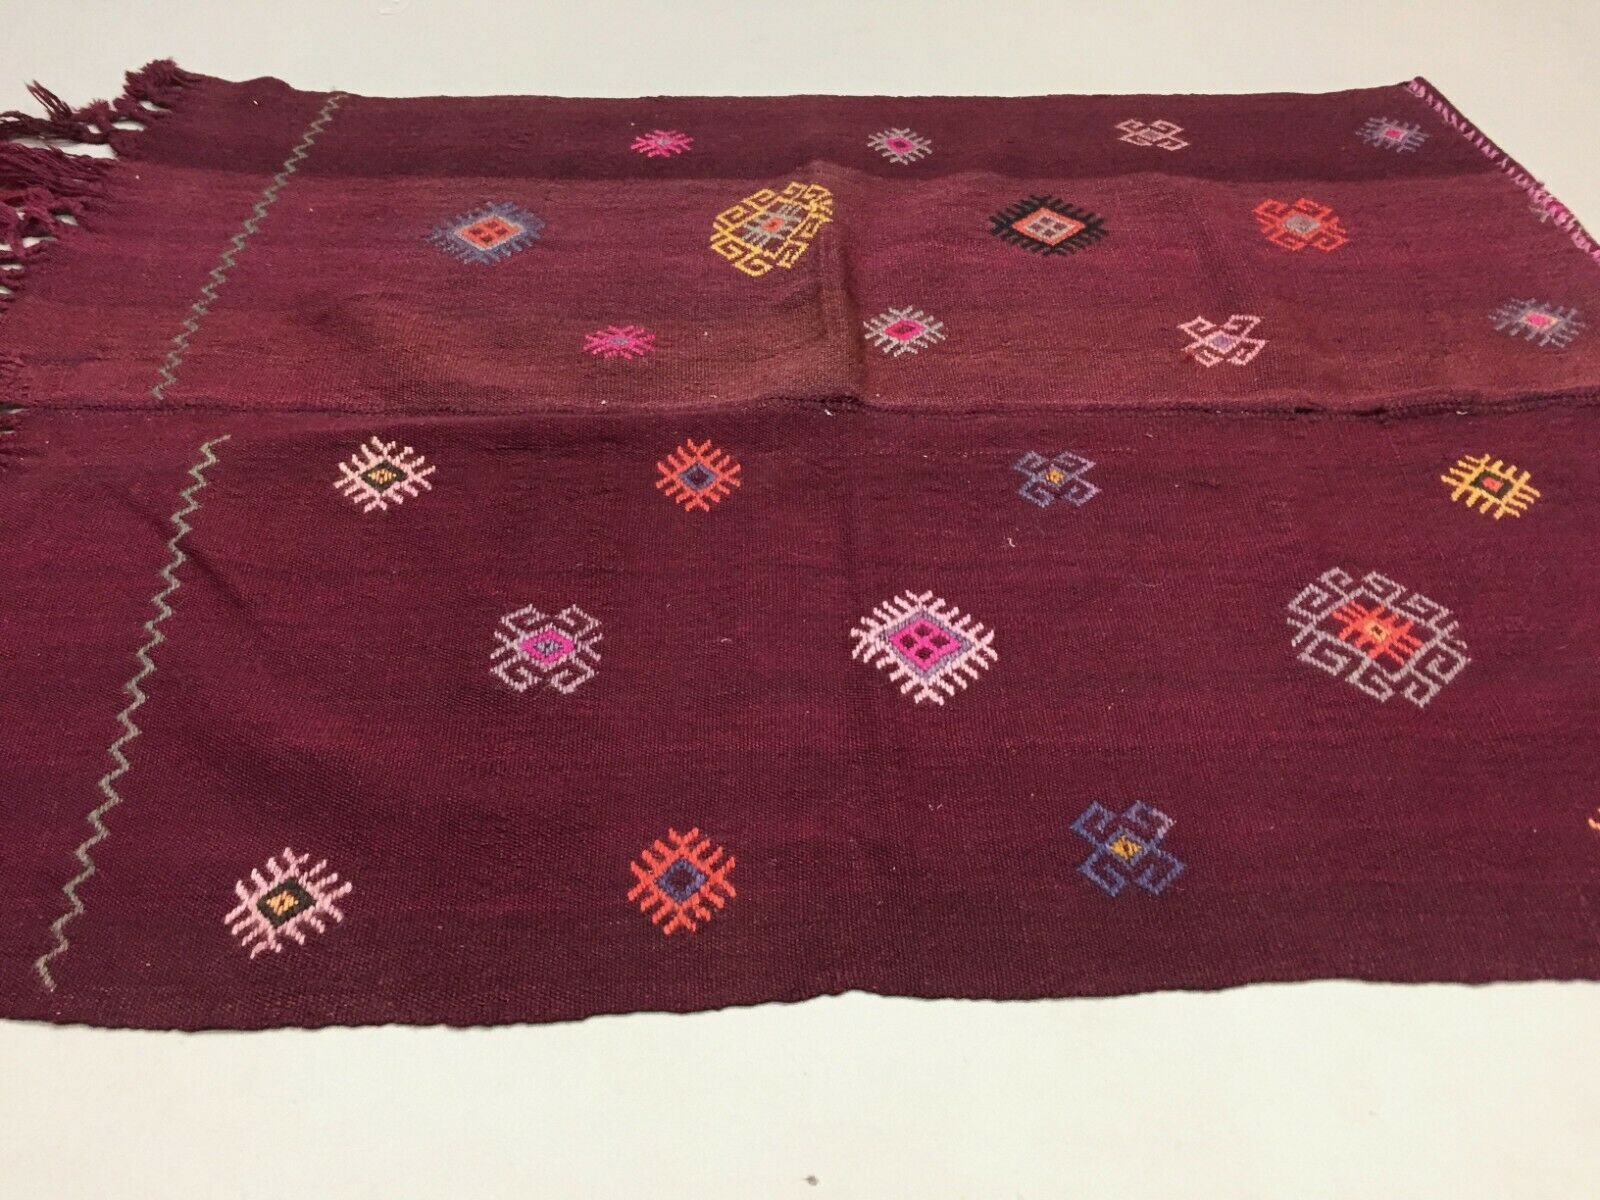 Small Vintage Turkish Kilim 125x90 cm Tribal Kelim Rug, Red, Maroon Purple